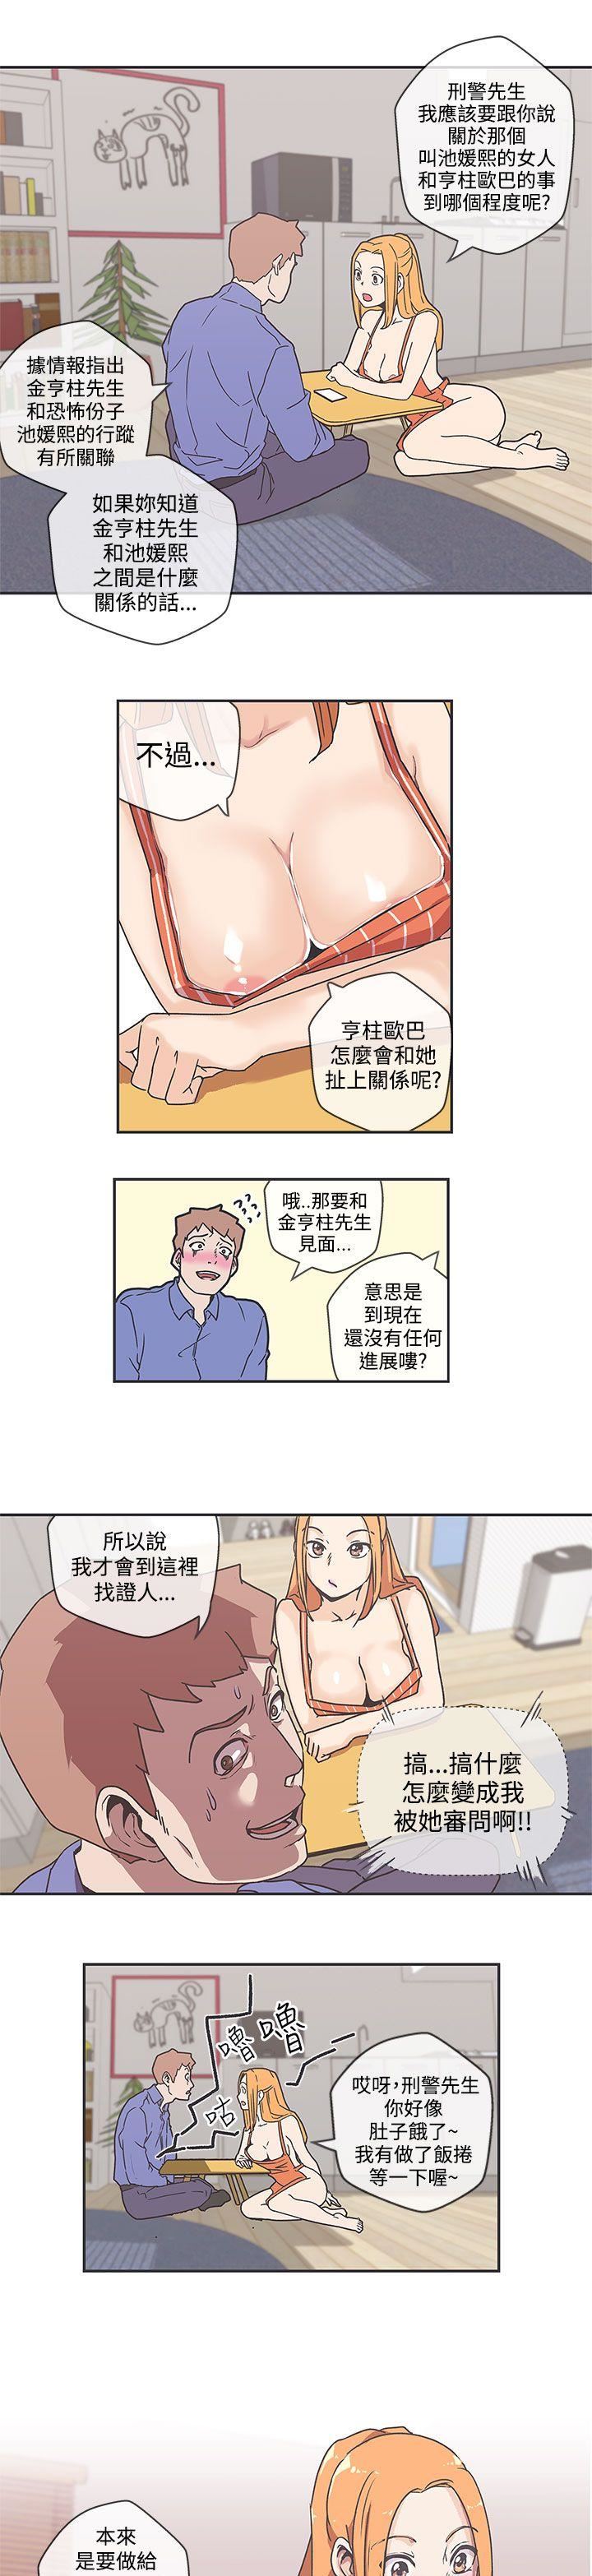 韩国污漫画 LOVE 愛的導航G 第39话 10